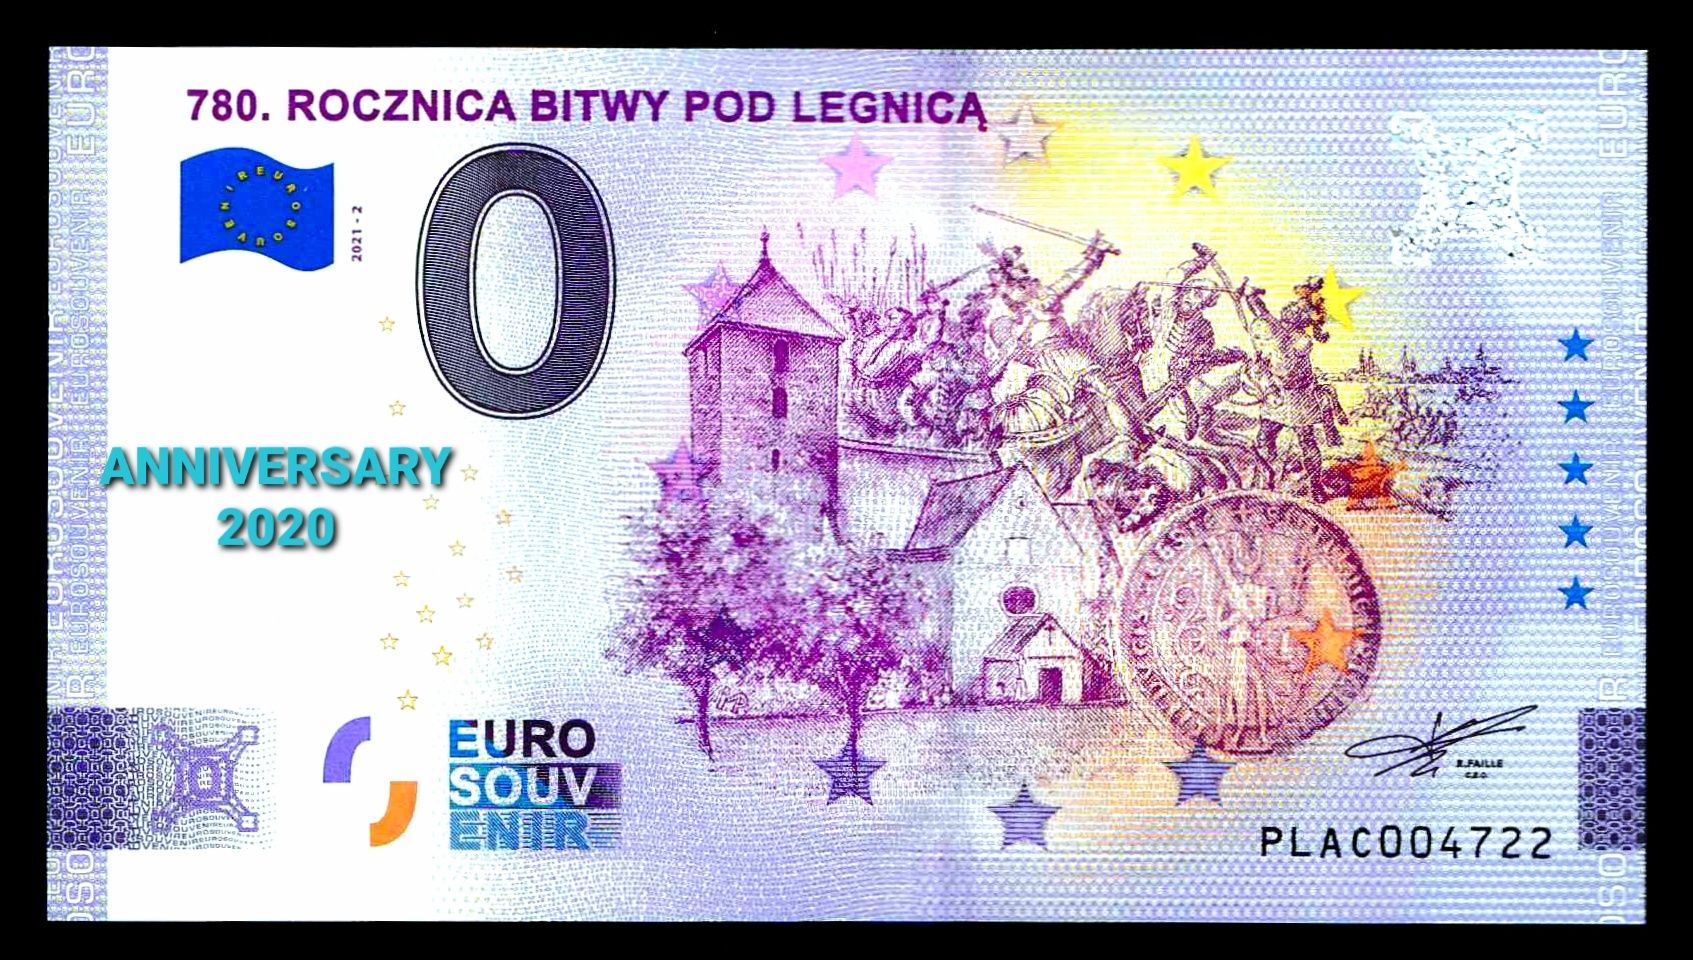 0 euro Rocznica bitwy pod Legnica Anniversary